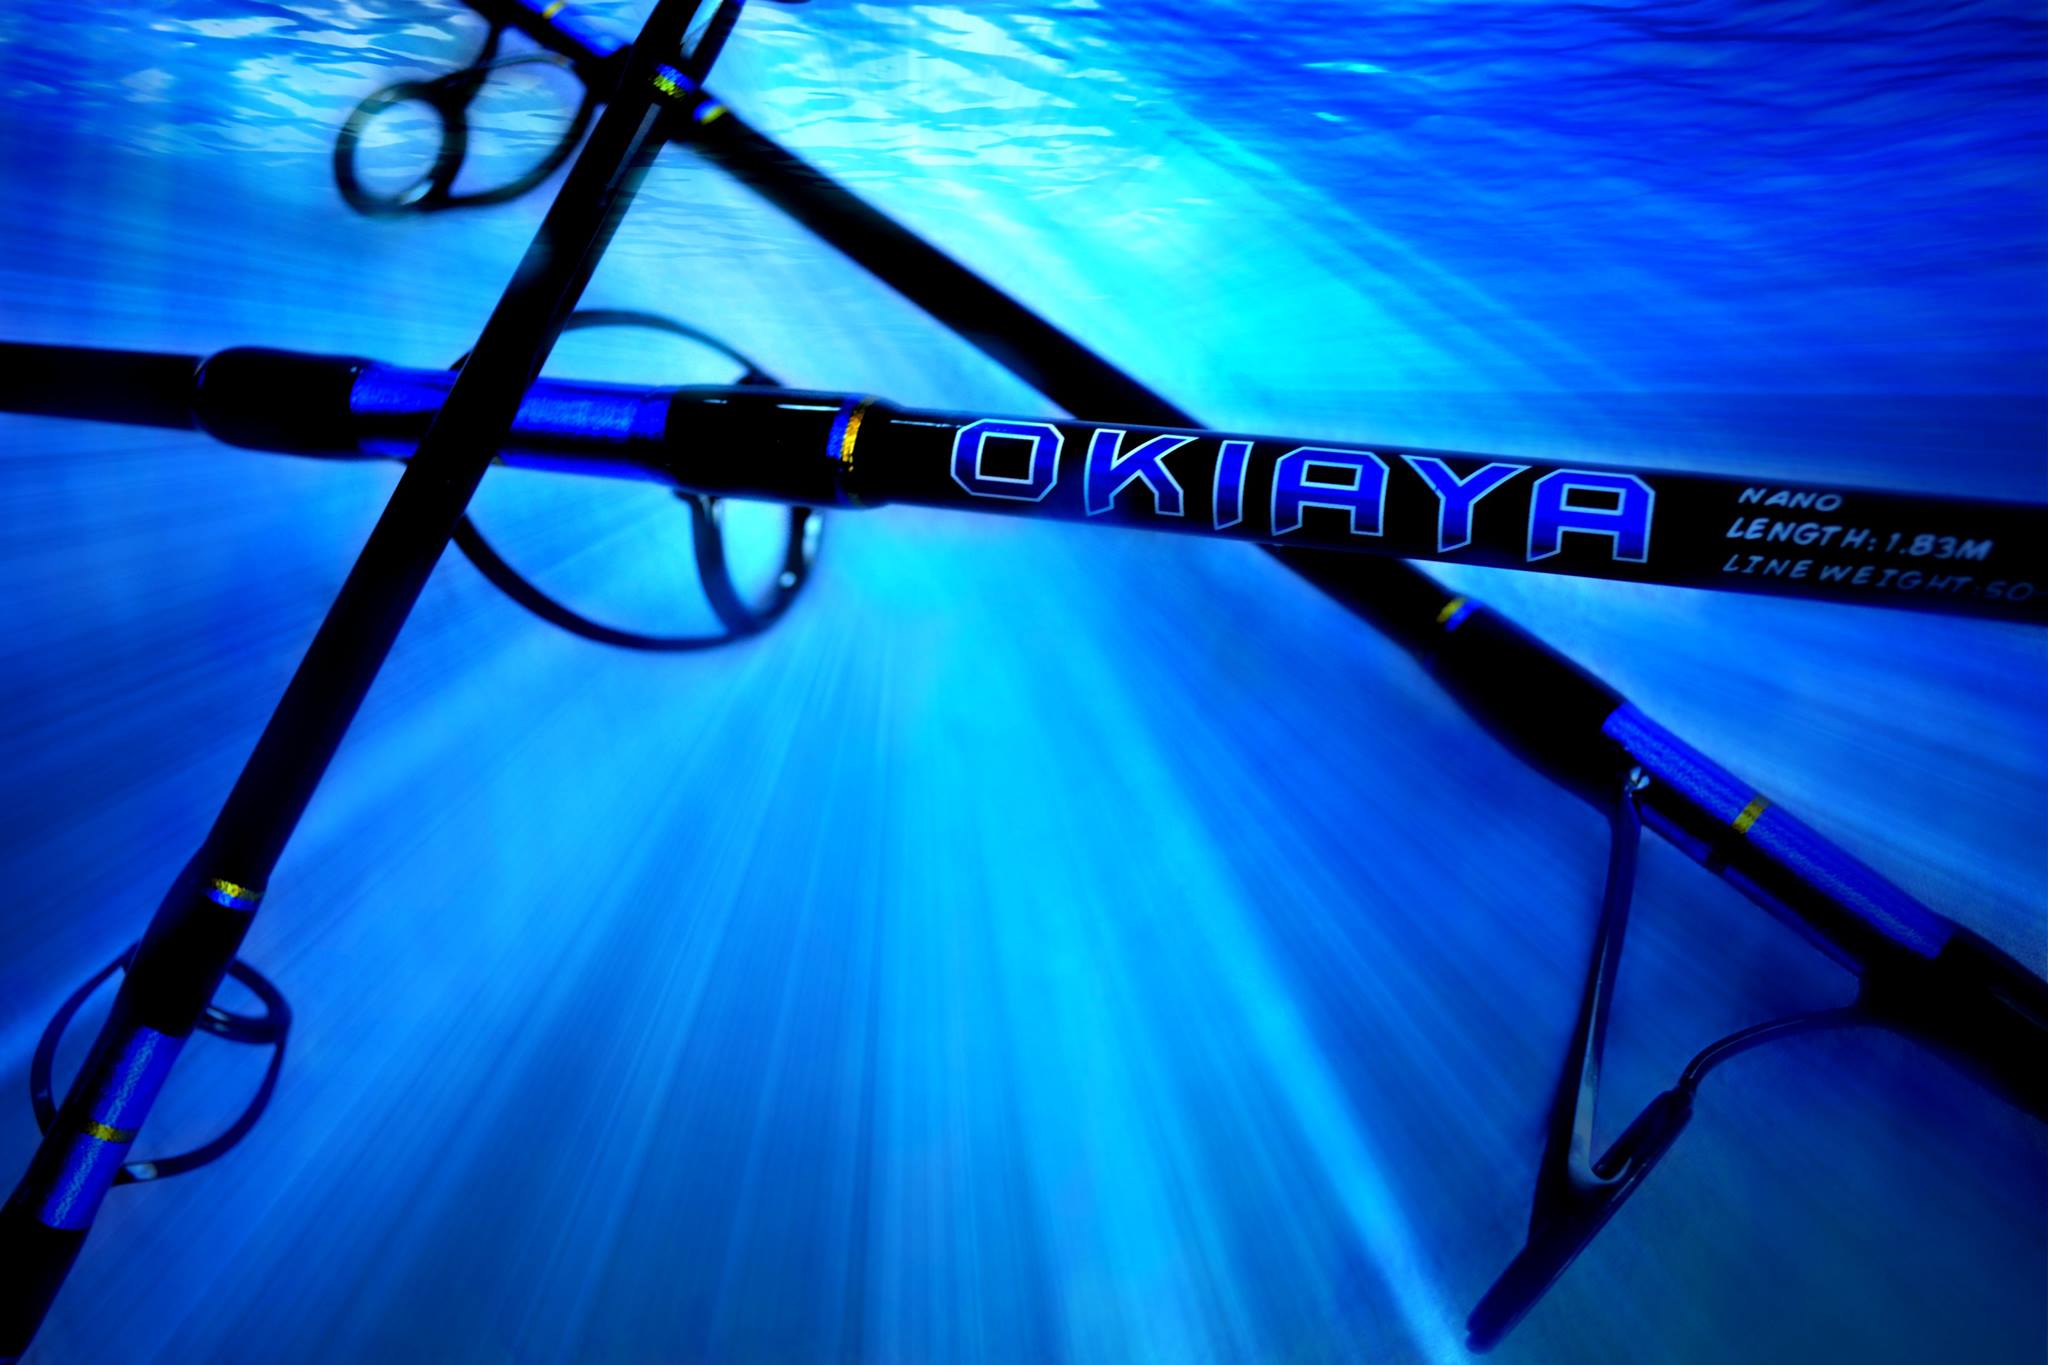 OKIAYA COMPOSIT 80-130LB “BLUELINE SERIES” SALTWATER ROLLER ROD 6ft